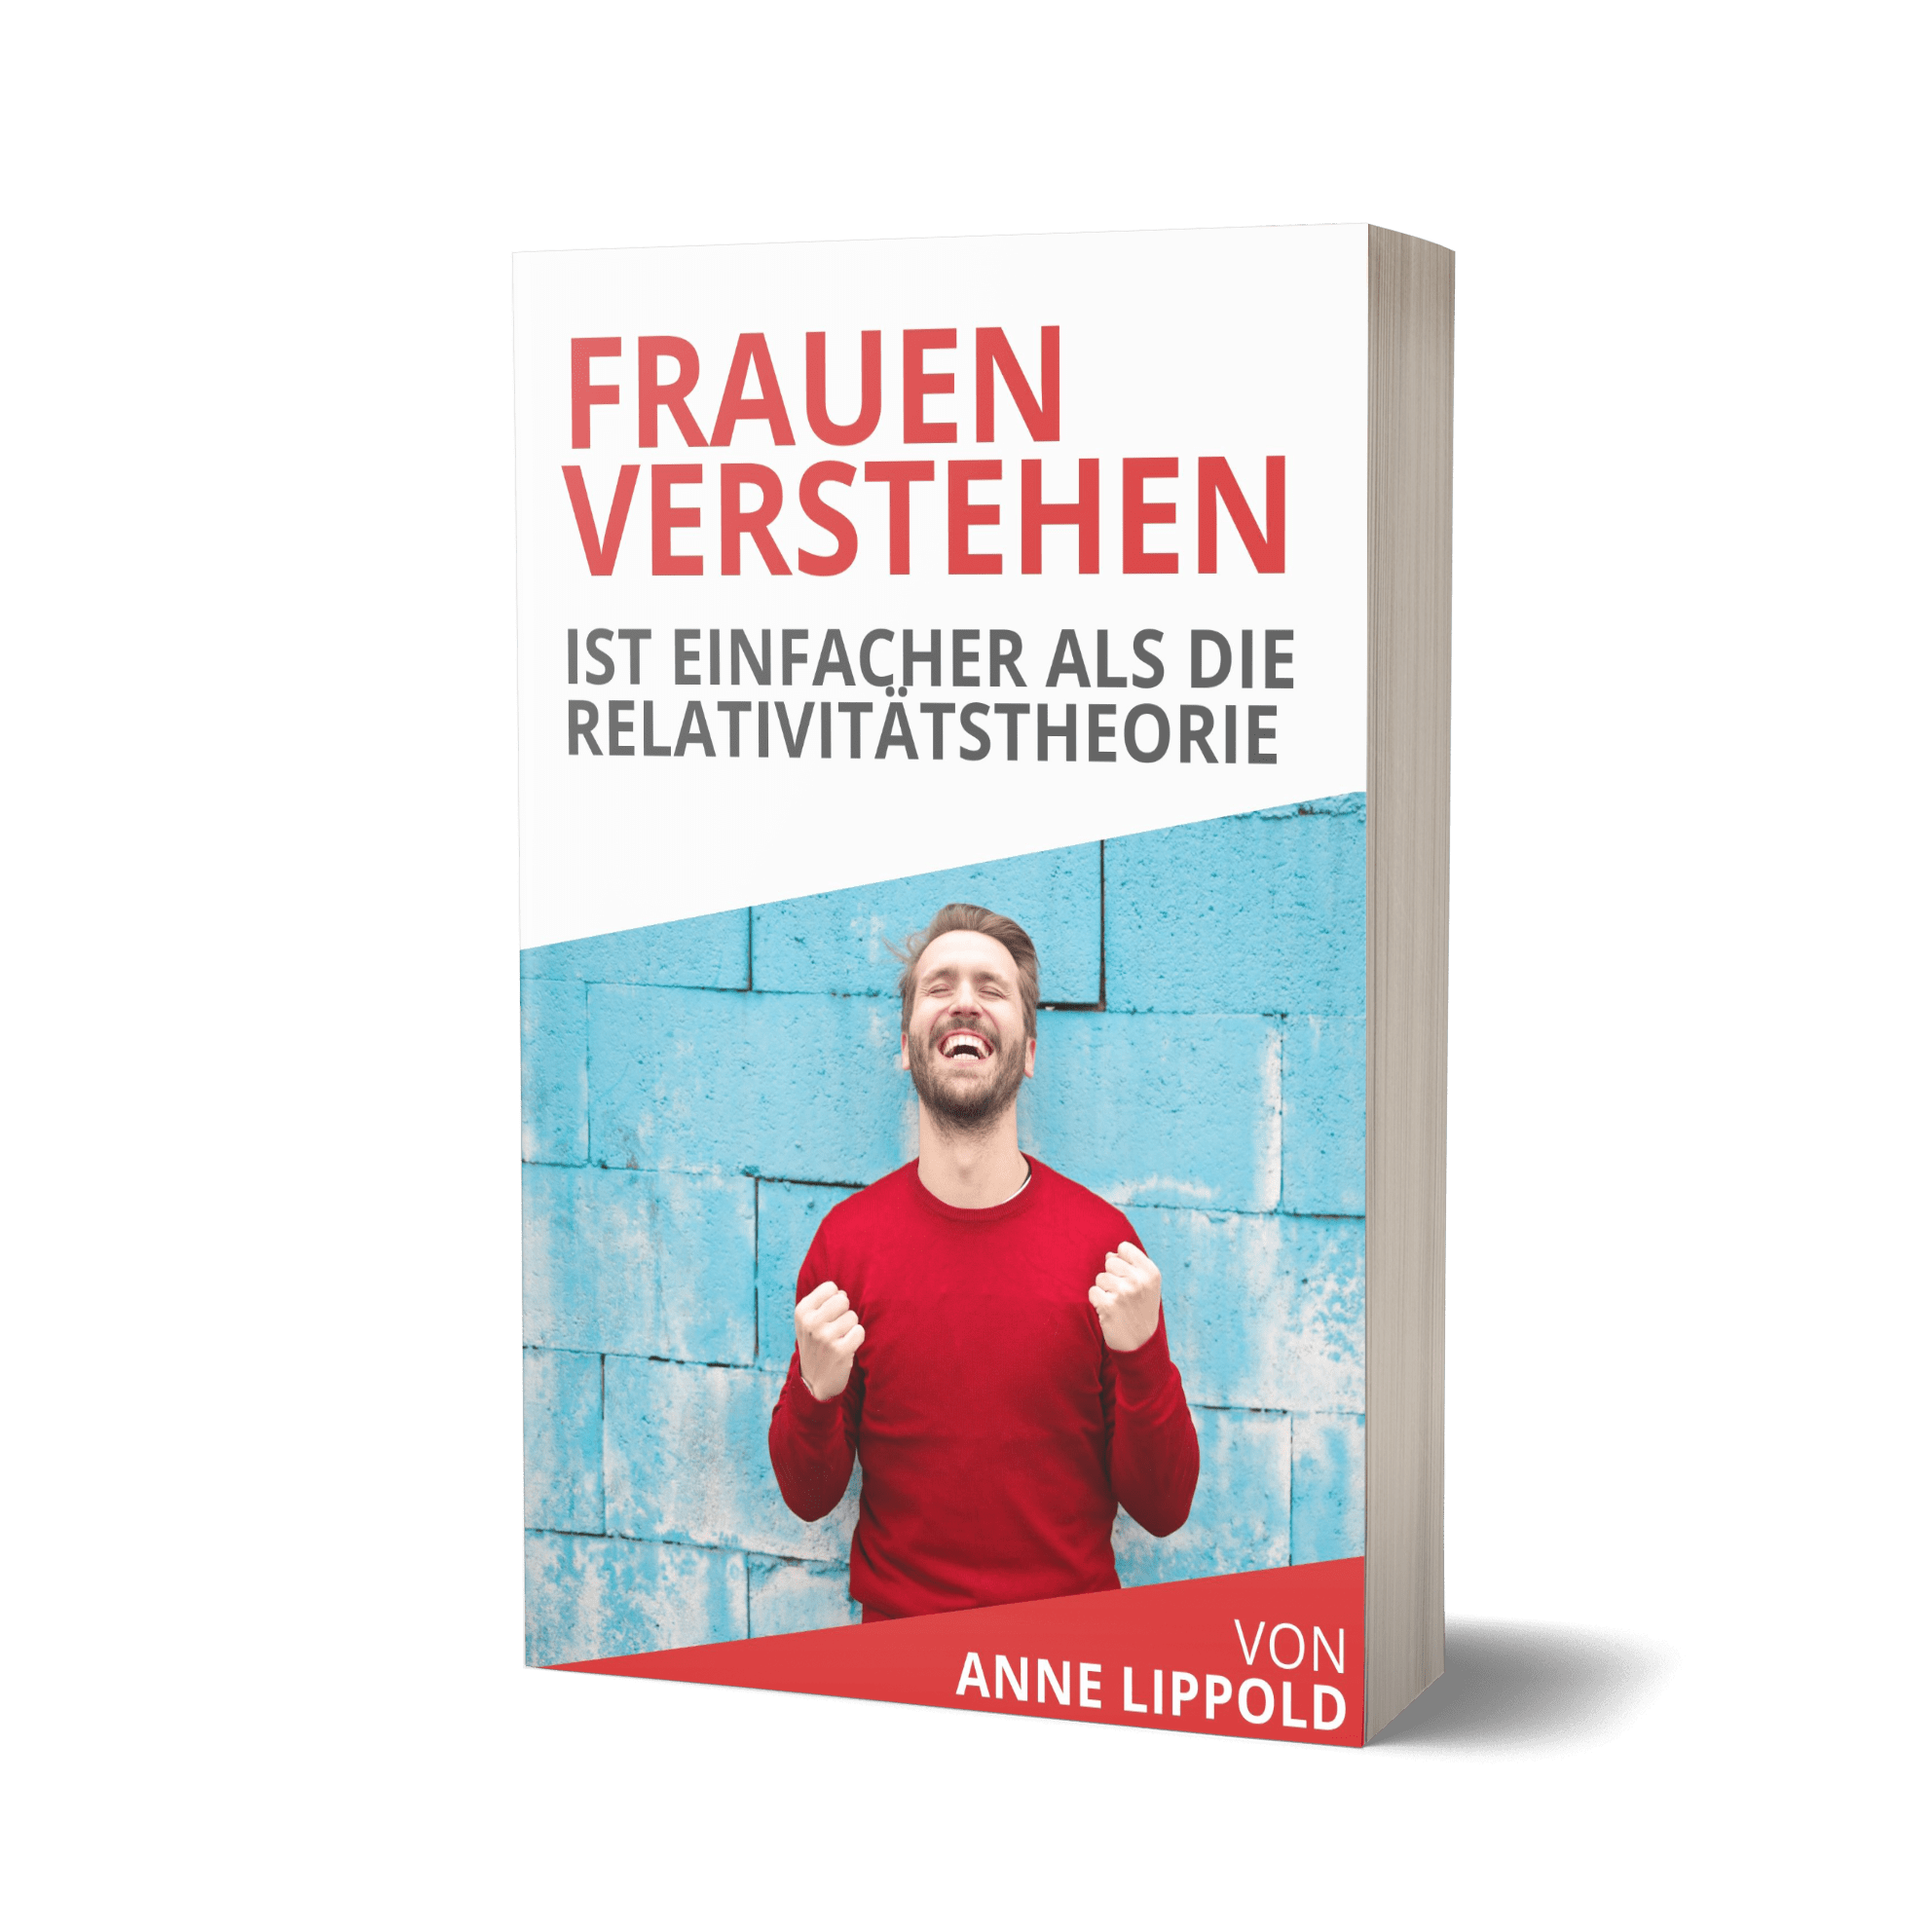 Fraulichkeit Frauen verstehen Buch als PDF für Männer, Bedienungsanleitung, wie ticken Frauen